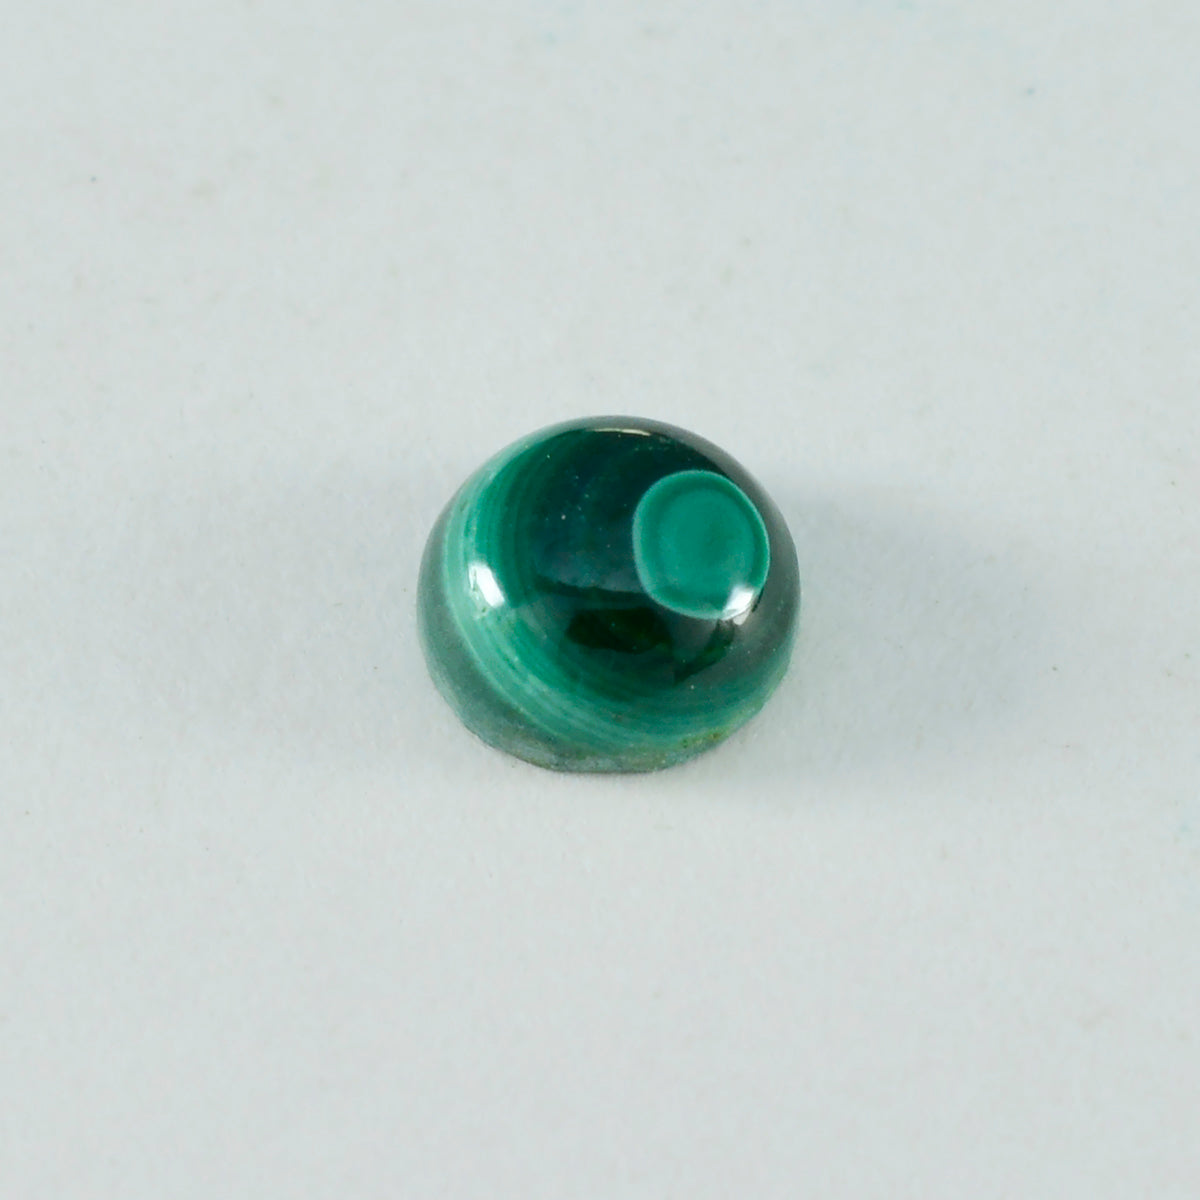 riyogems 1pc グリーン マラカイト カボション 11x11 mm ラウンド形状の素晴らしい品質の宝石